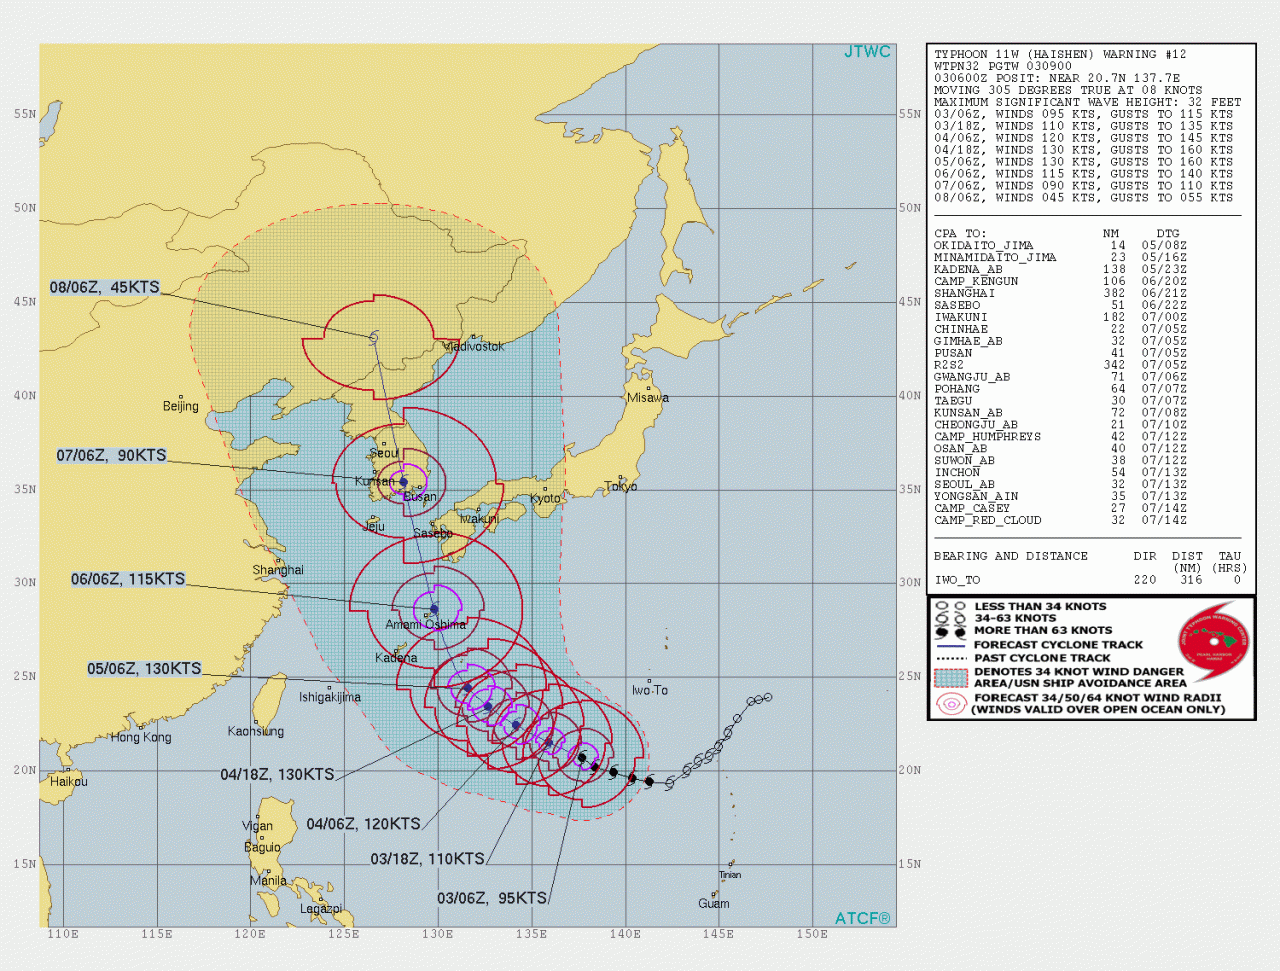 La rotta prevista del tifone Haisen